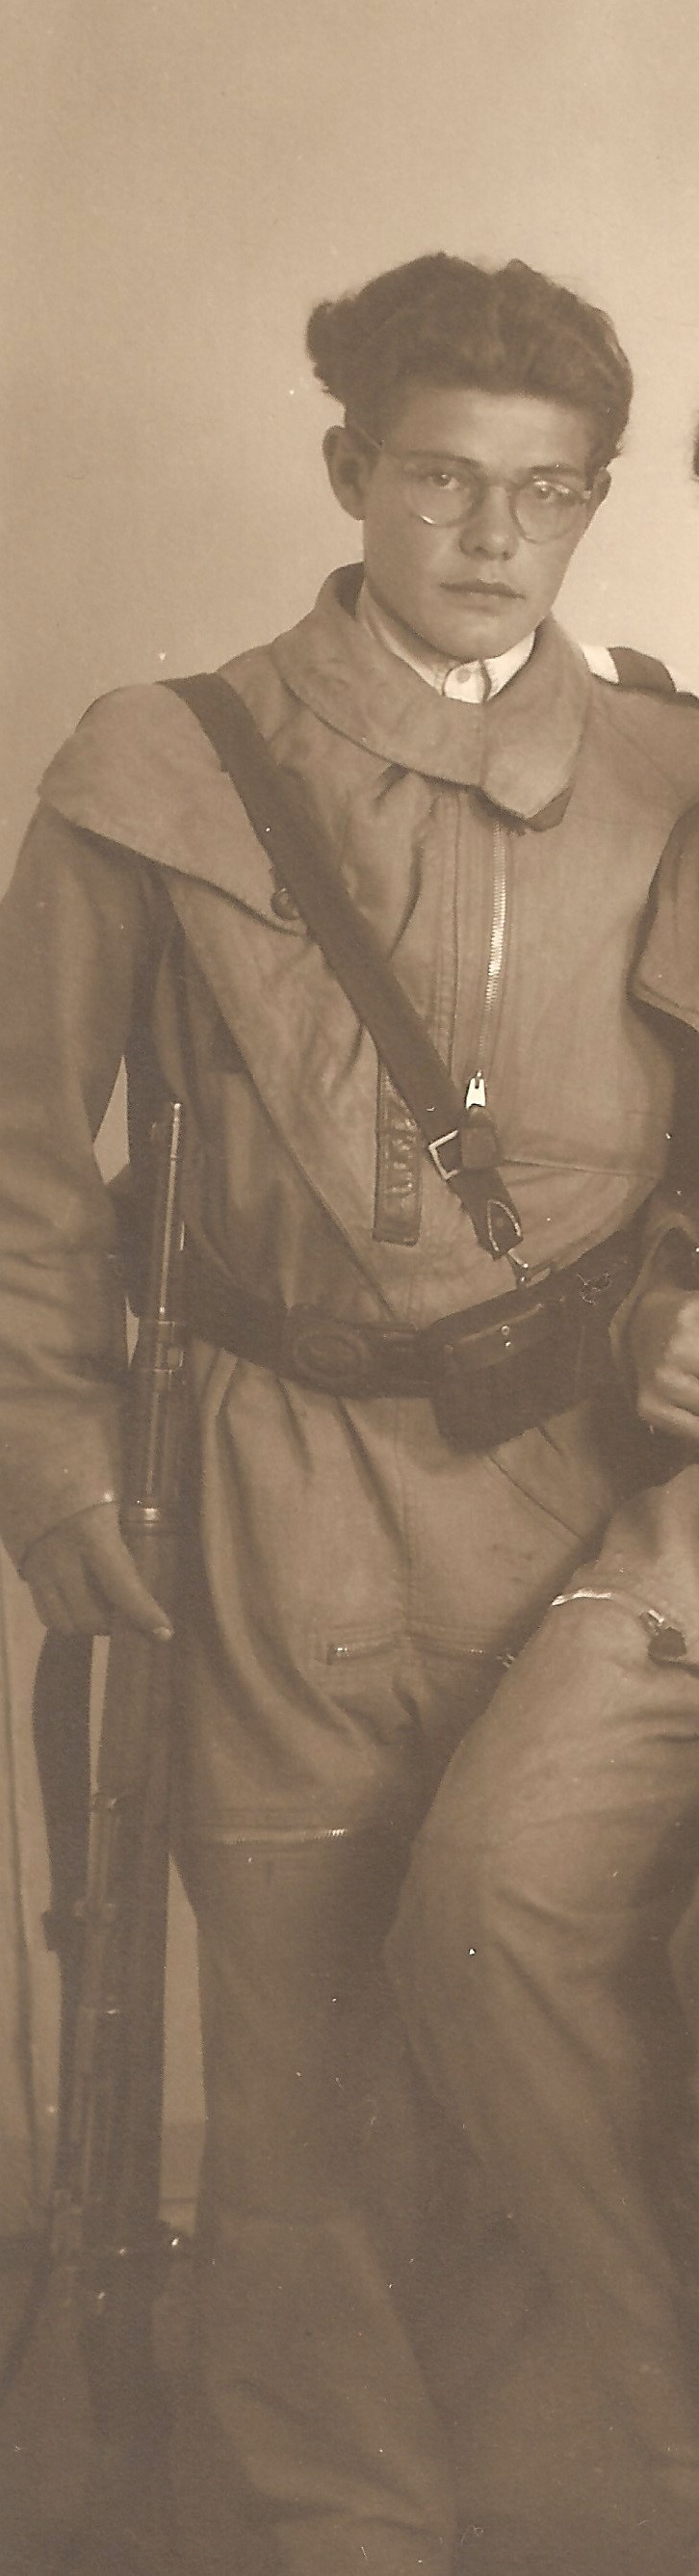 Jaroslav Hlubůček jako člen Revolučních gard v roce 1945 